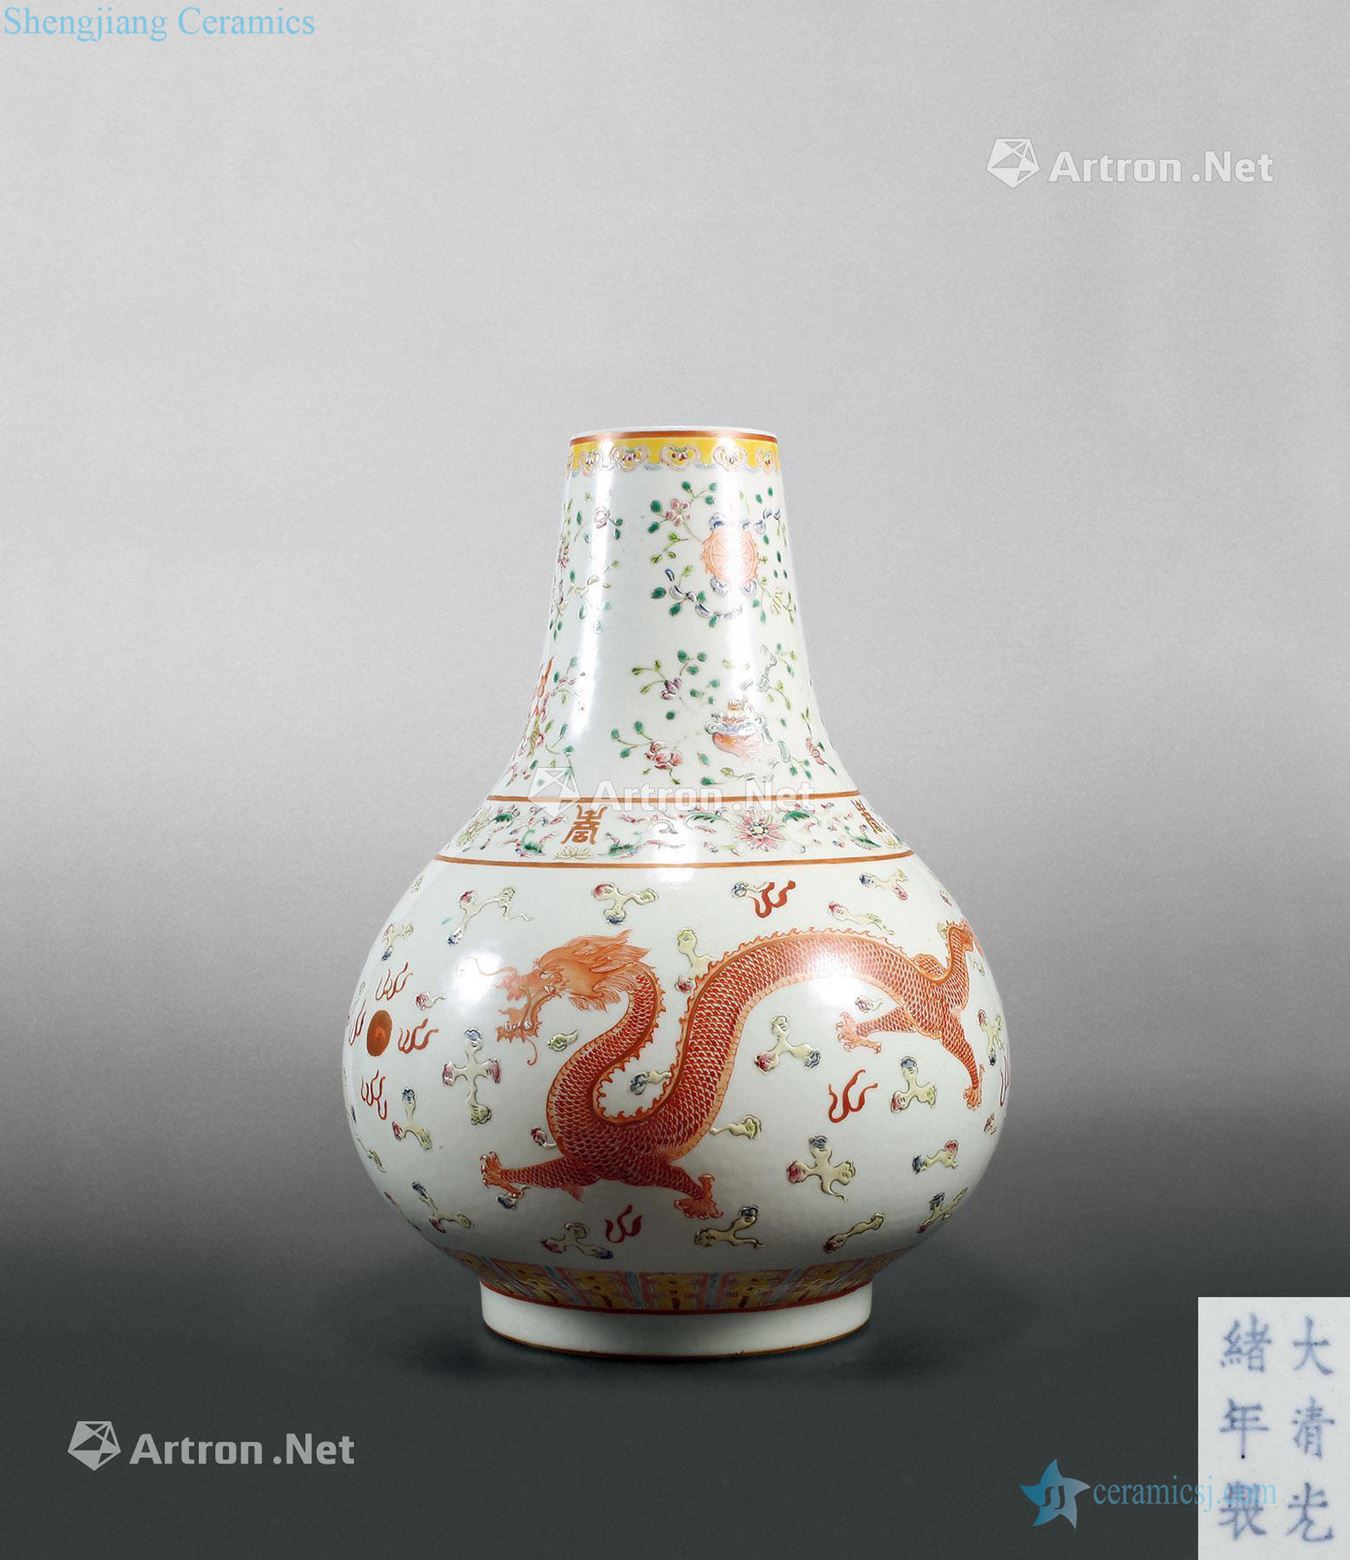 "Qing guangxu reign of qing emperor guangxu years" pastel longfeng grain bottle